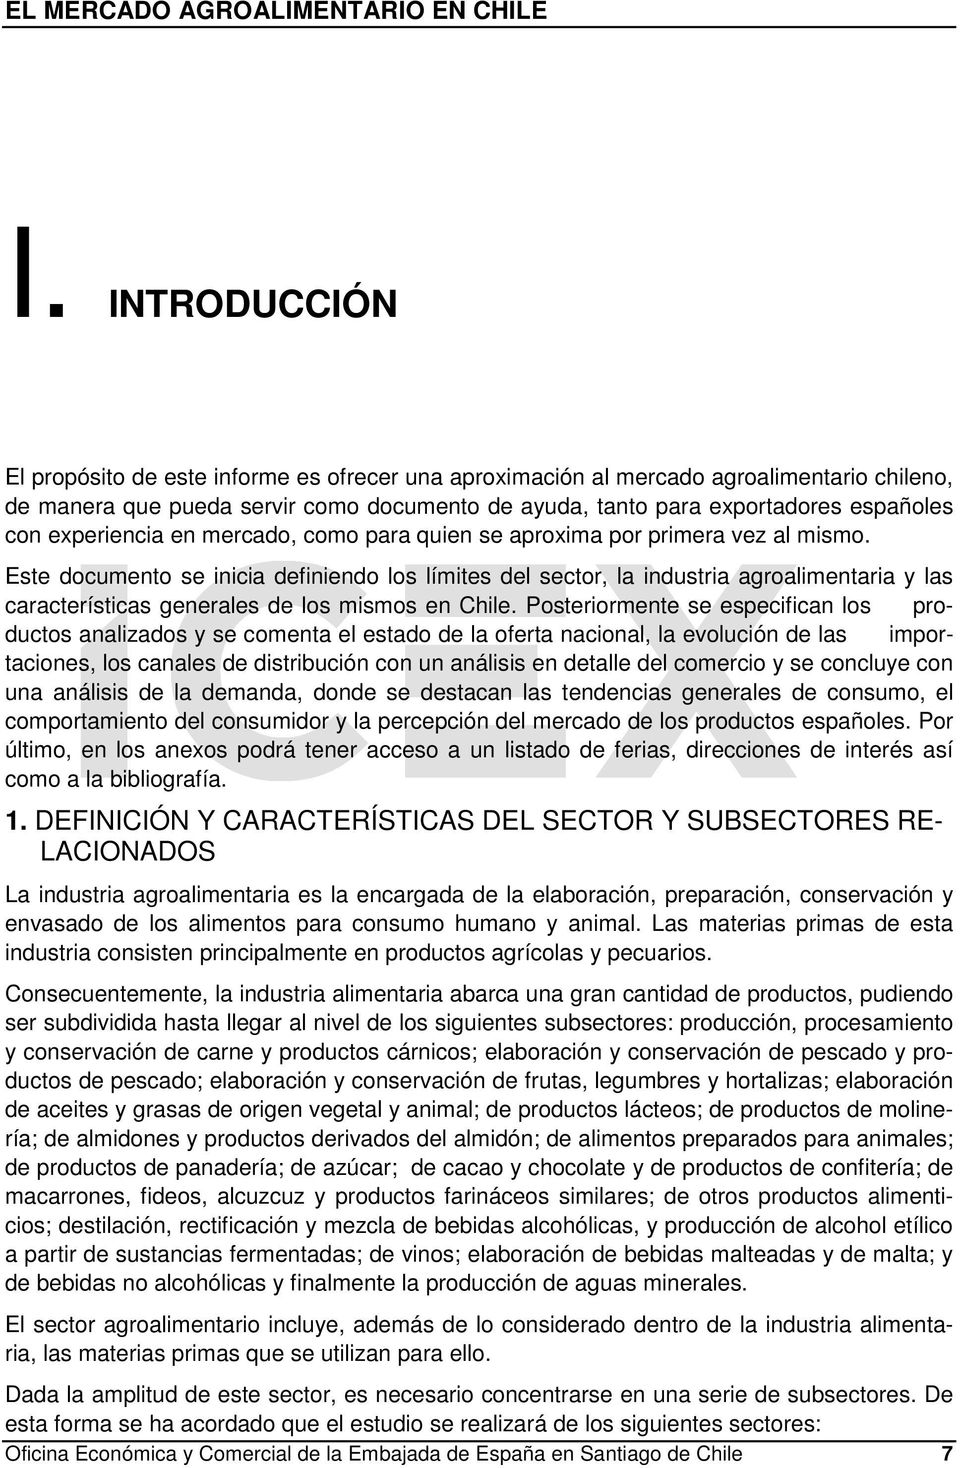 Este documento se inicia definiendo los límites del sector, la industria agroalimentaria y las características generales de los mismos en Chile.